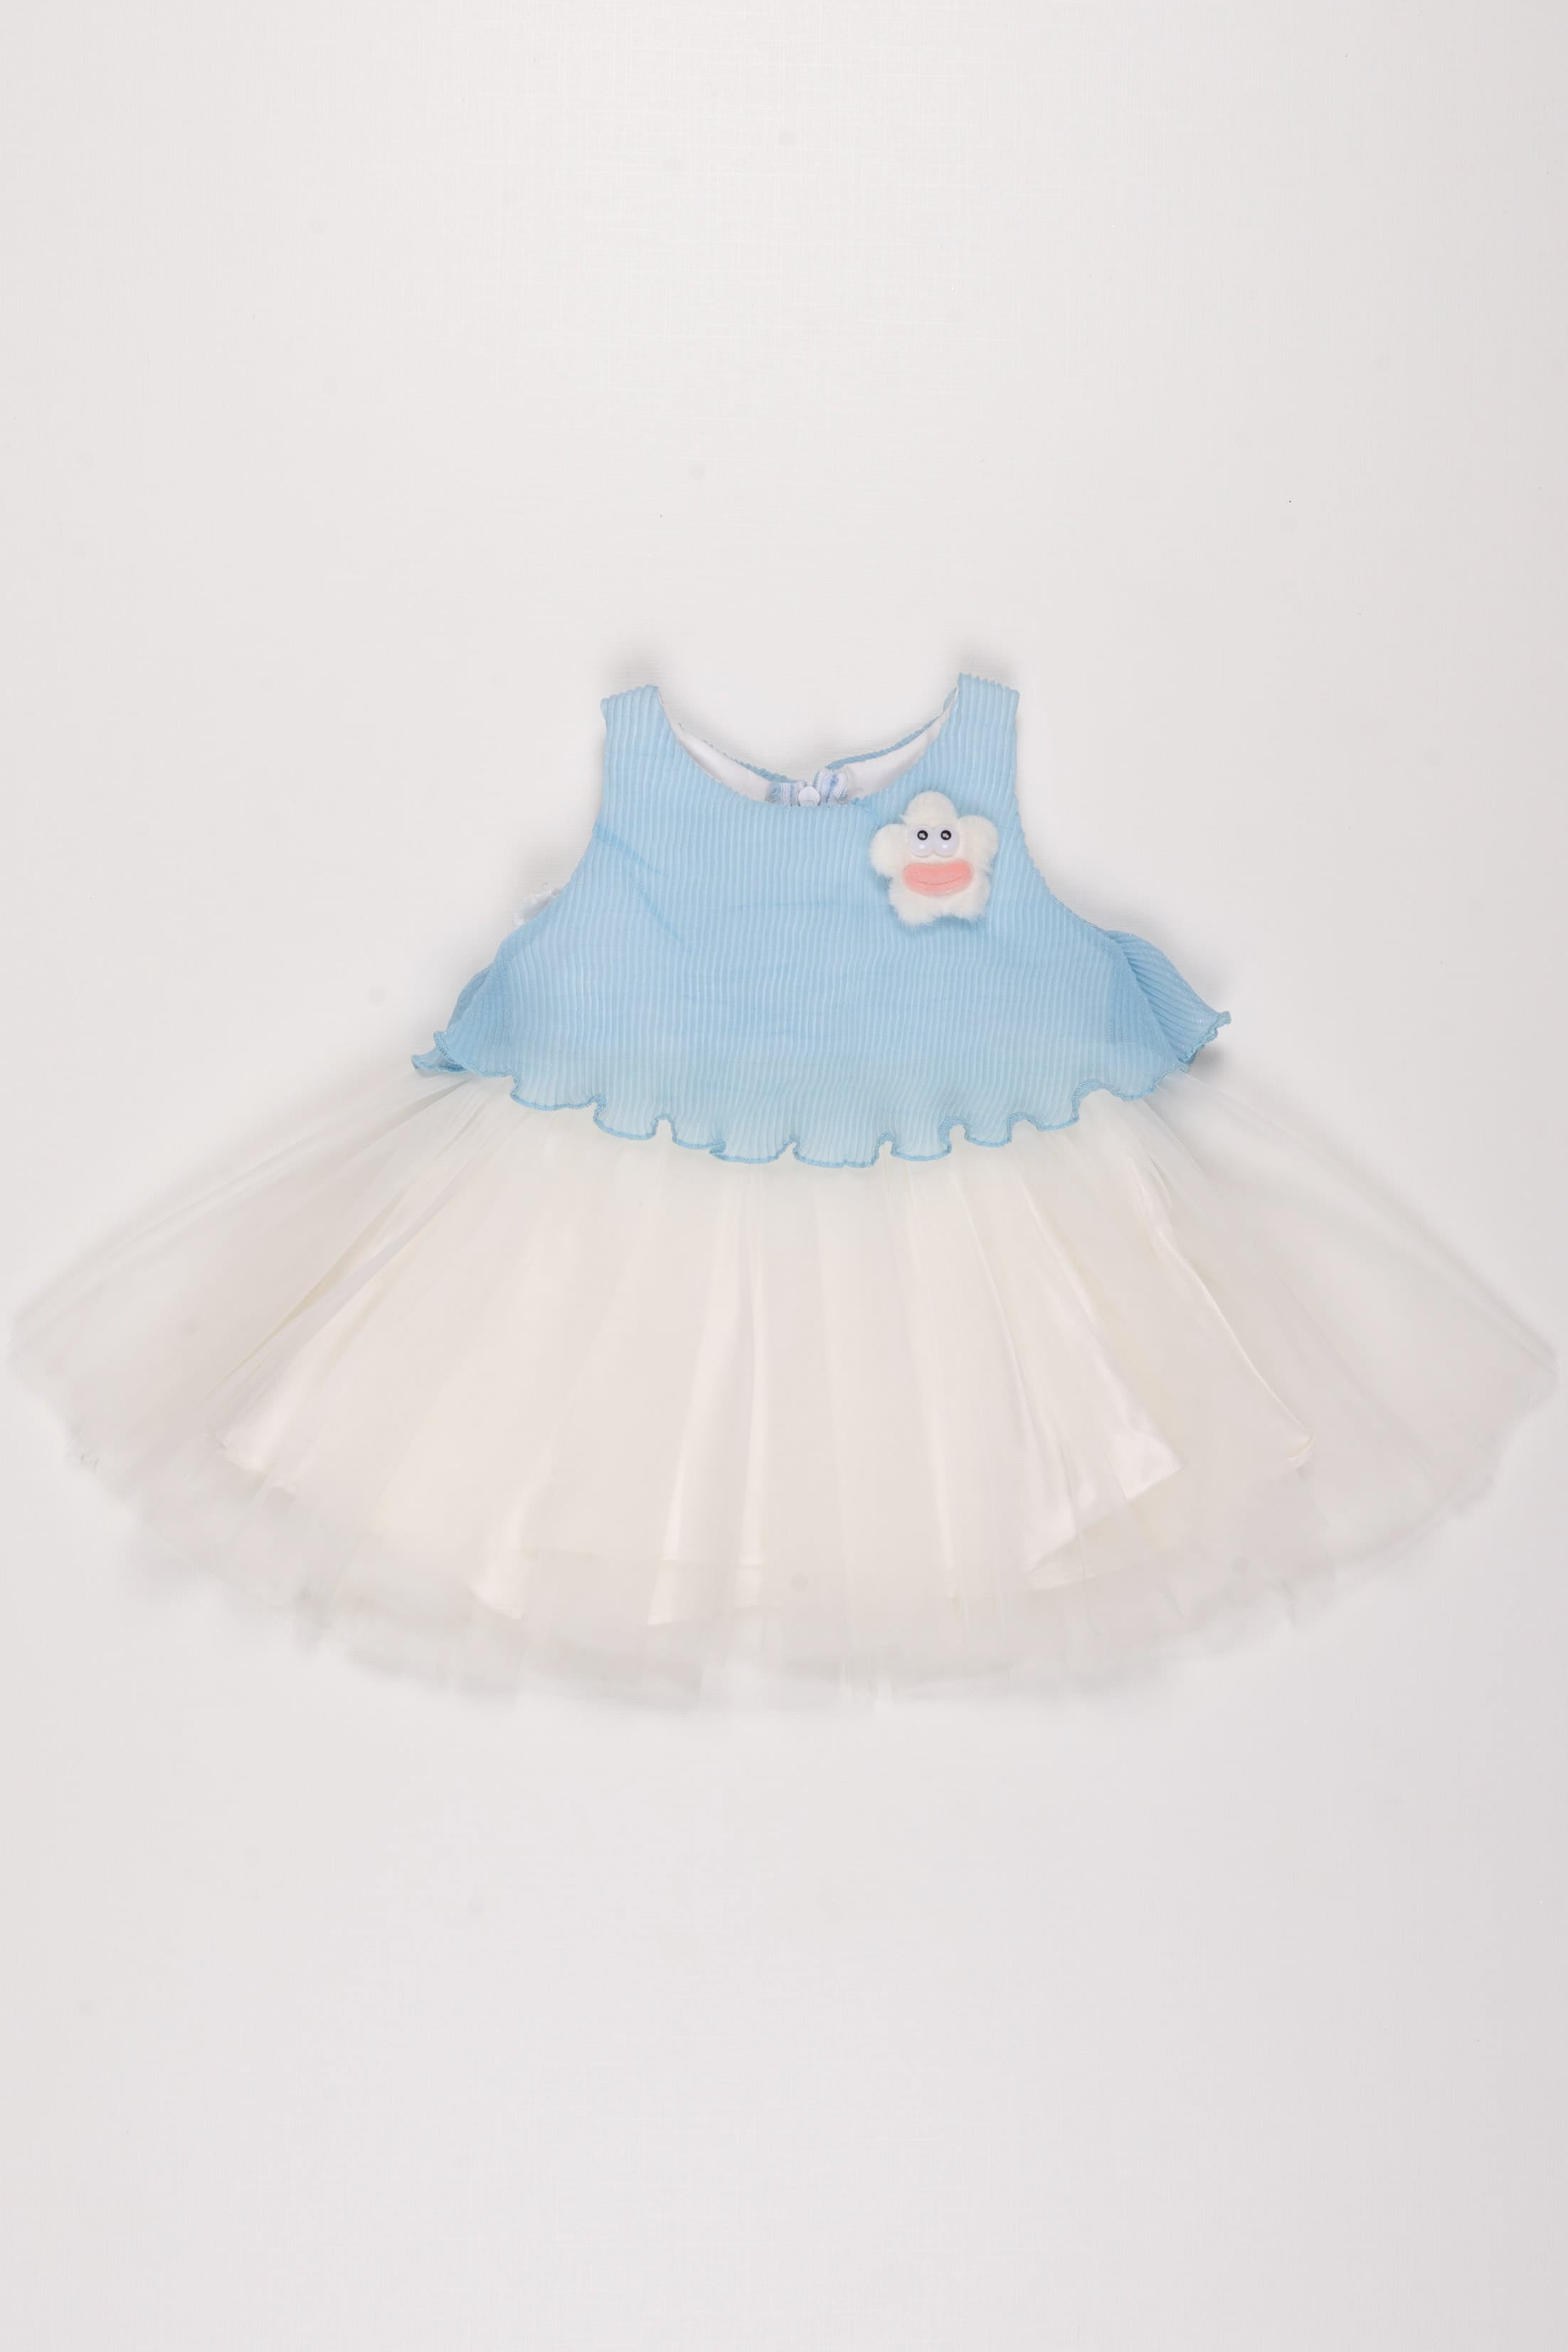 Buy Sky Blue Fluffy Net Gown for Girls – Mumkins